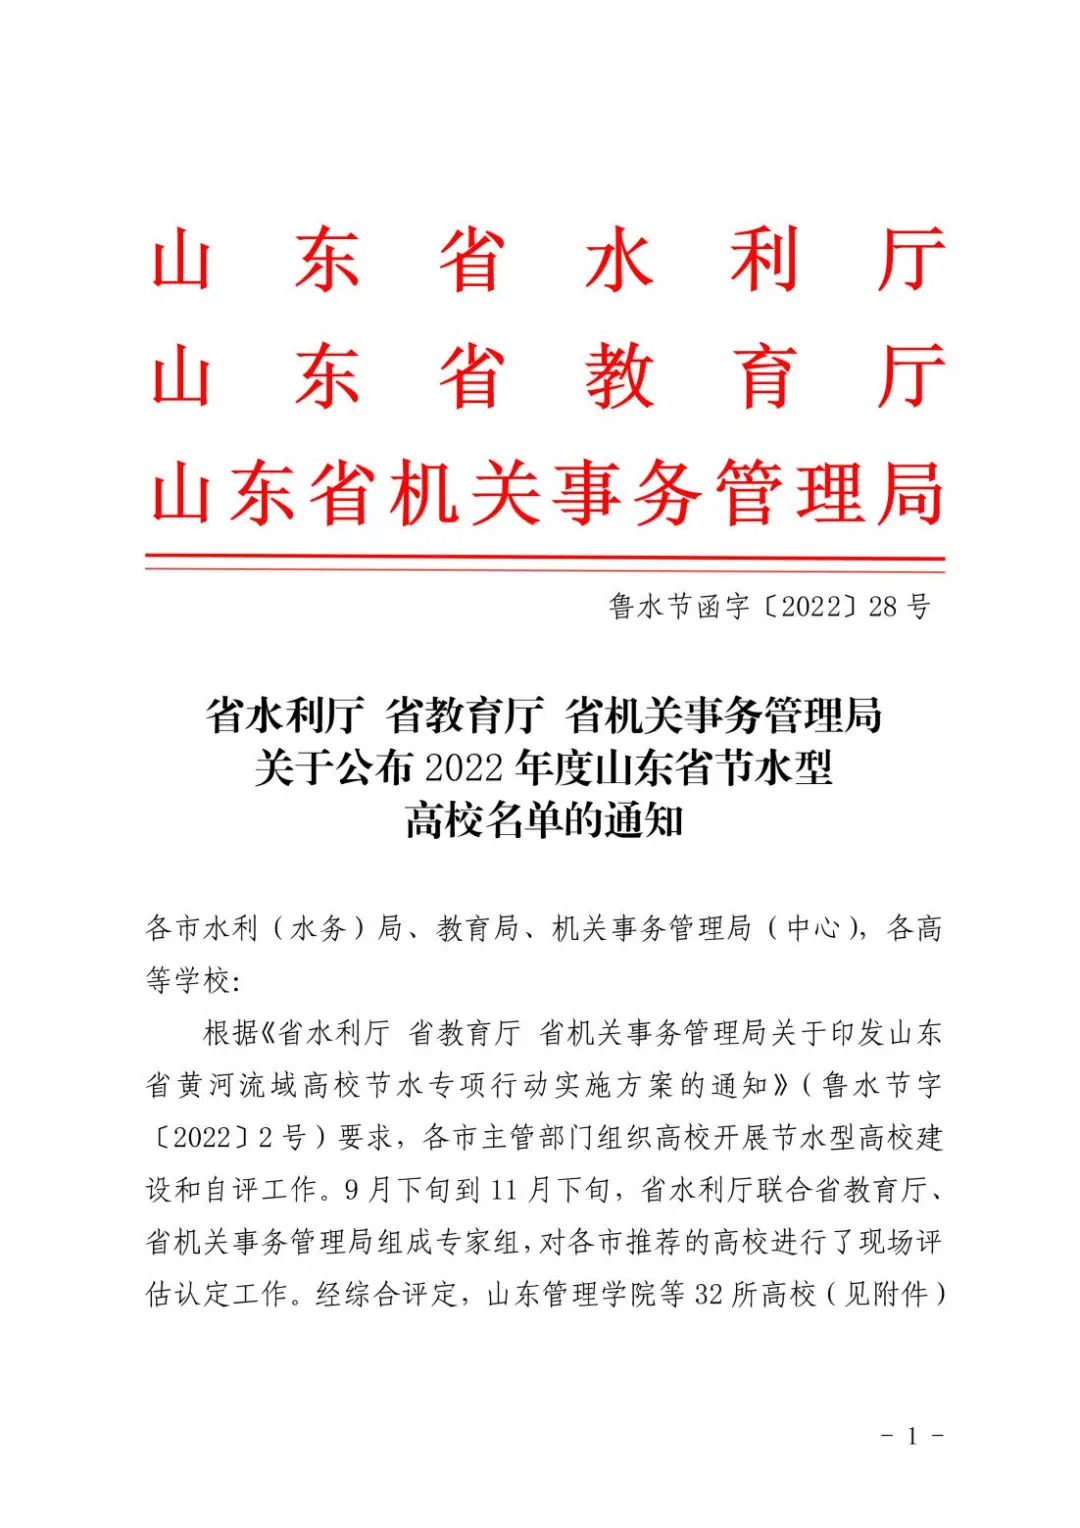 青岛求实职业技术学院被评为“山东省节水型高校”